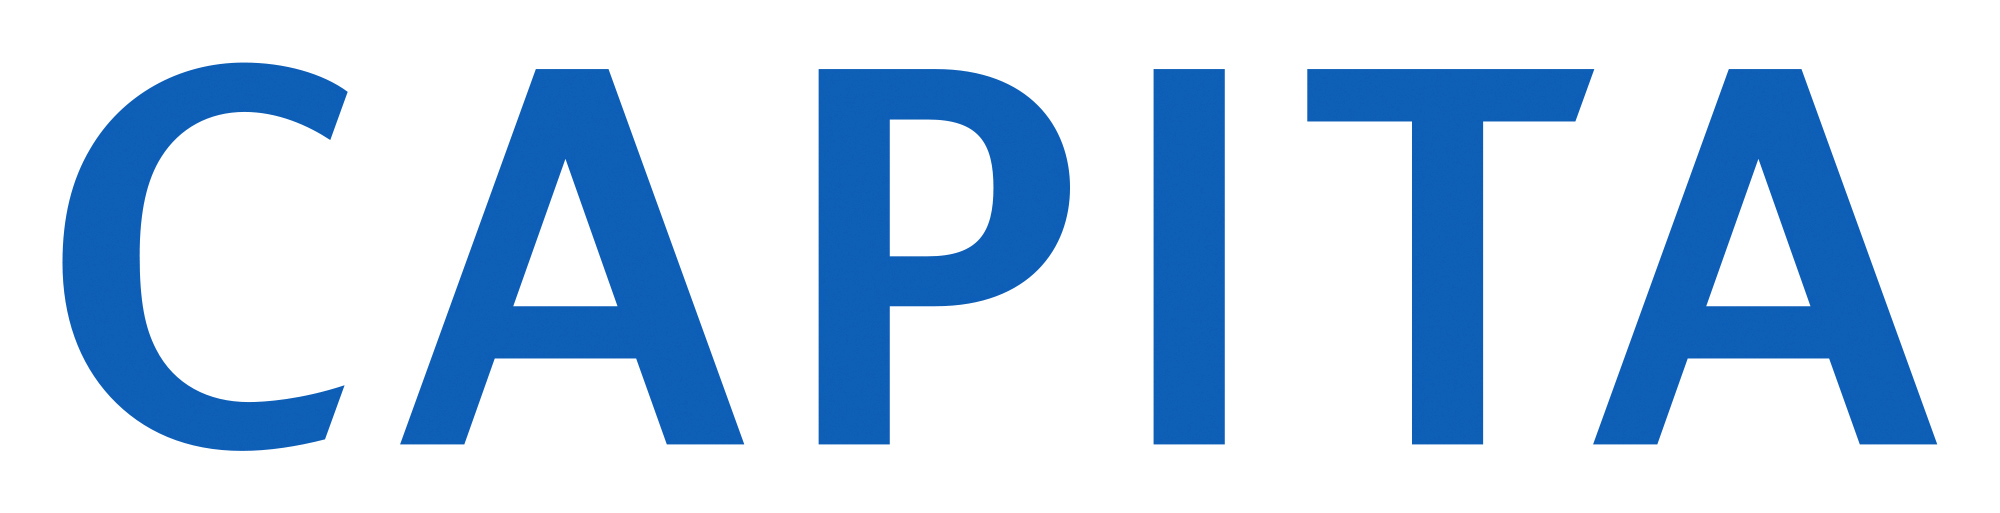 Displaying Image For Capita Logo